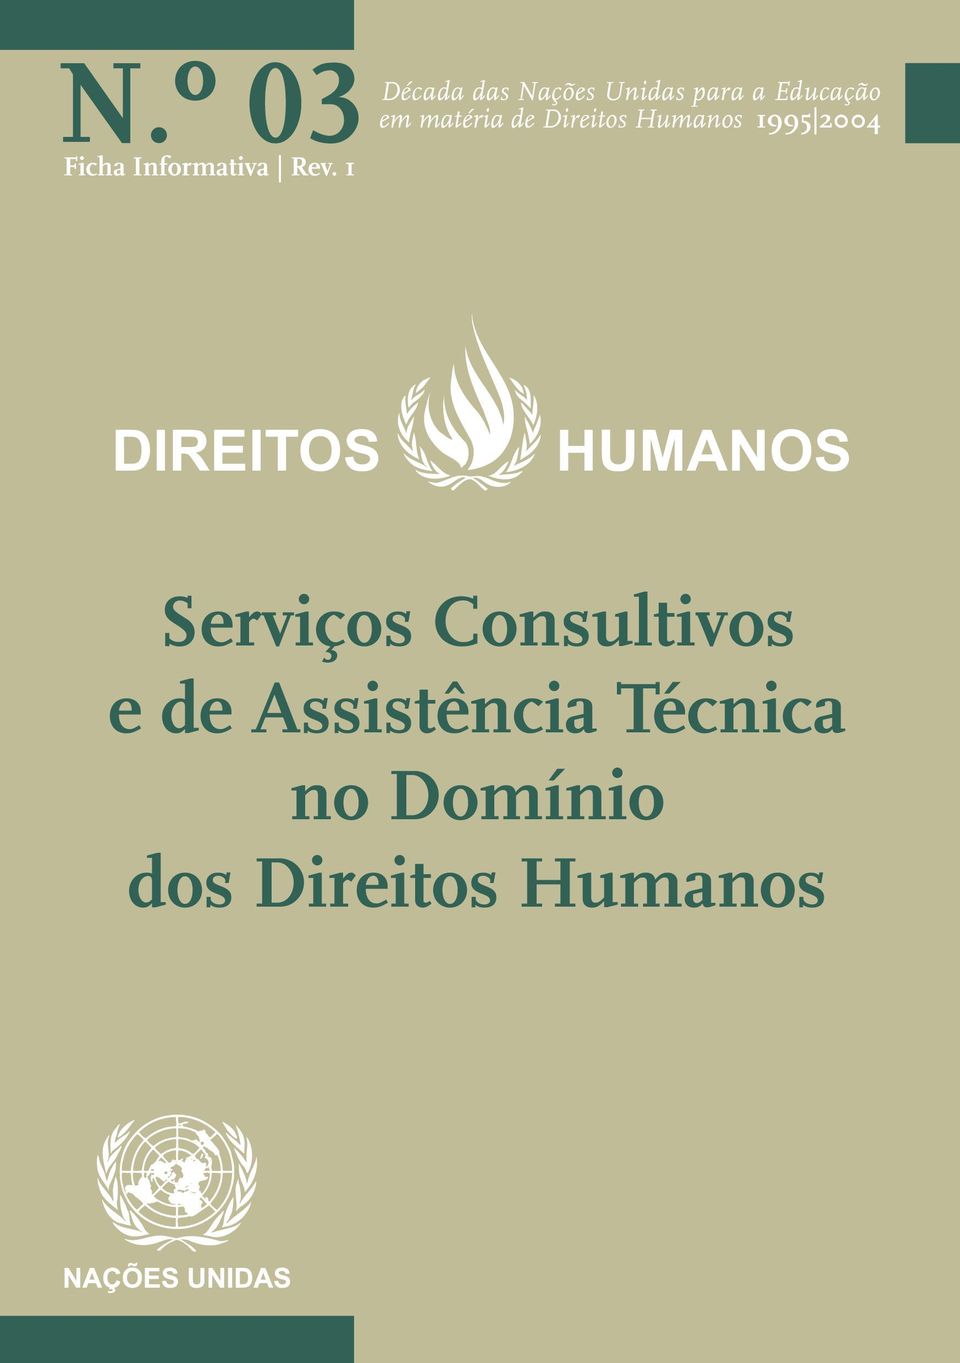 matéria de Direitos Humanos 1995 2004 DIREITOS